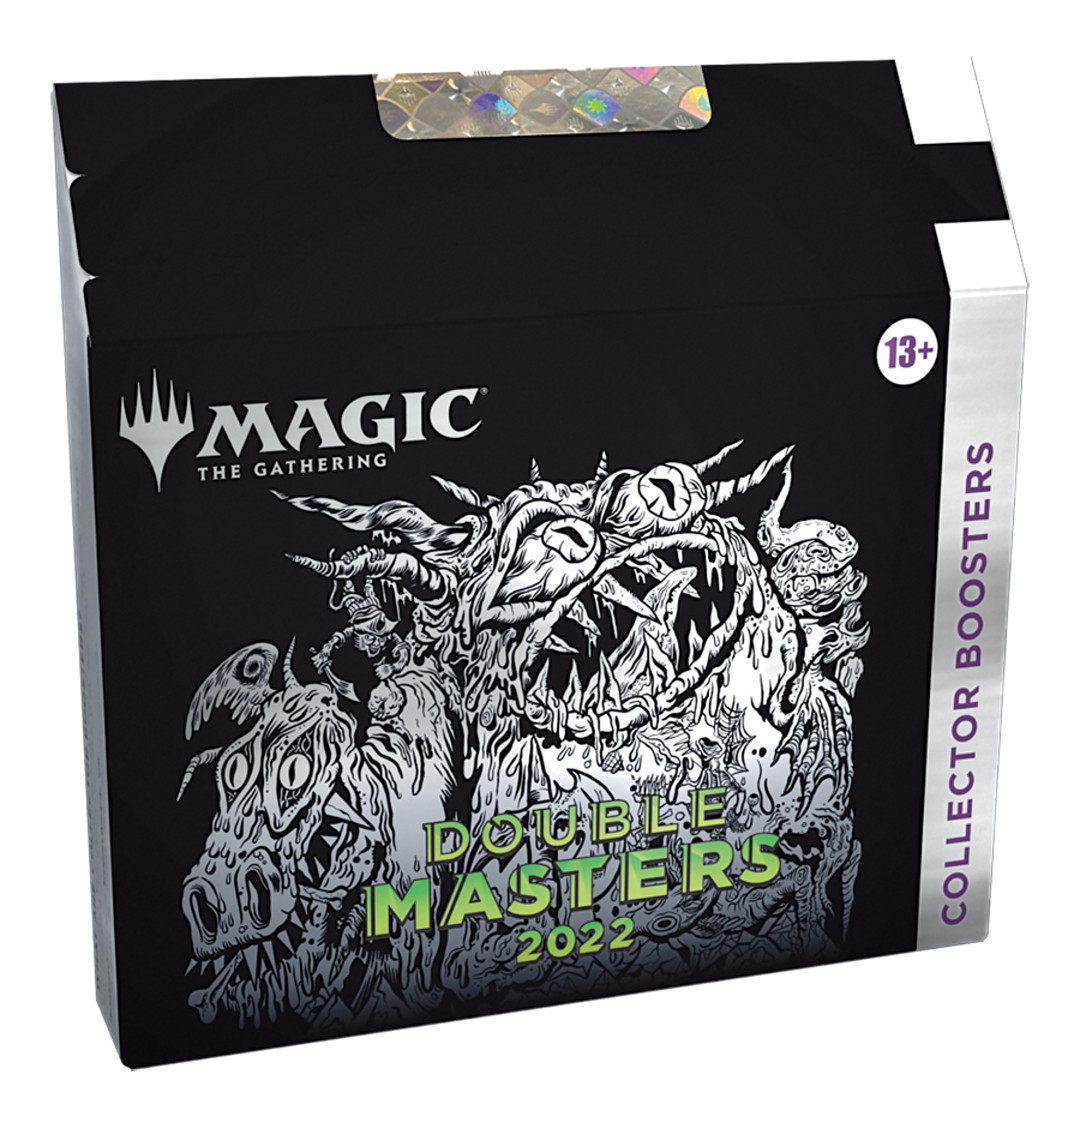 ダブルマスターズ2022 コレクターブースター 1box - マジック：ザ